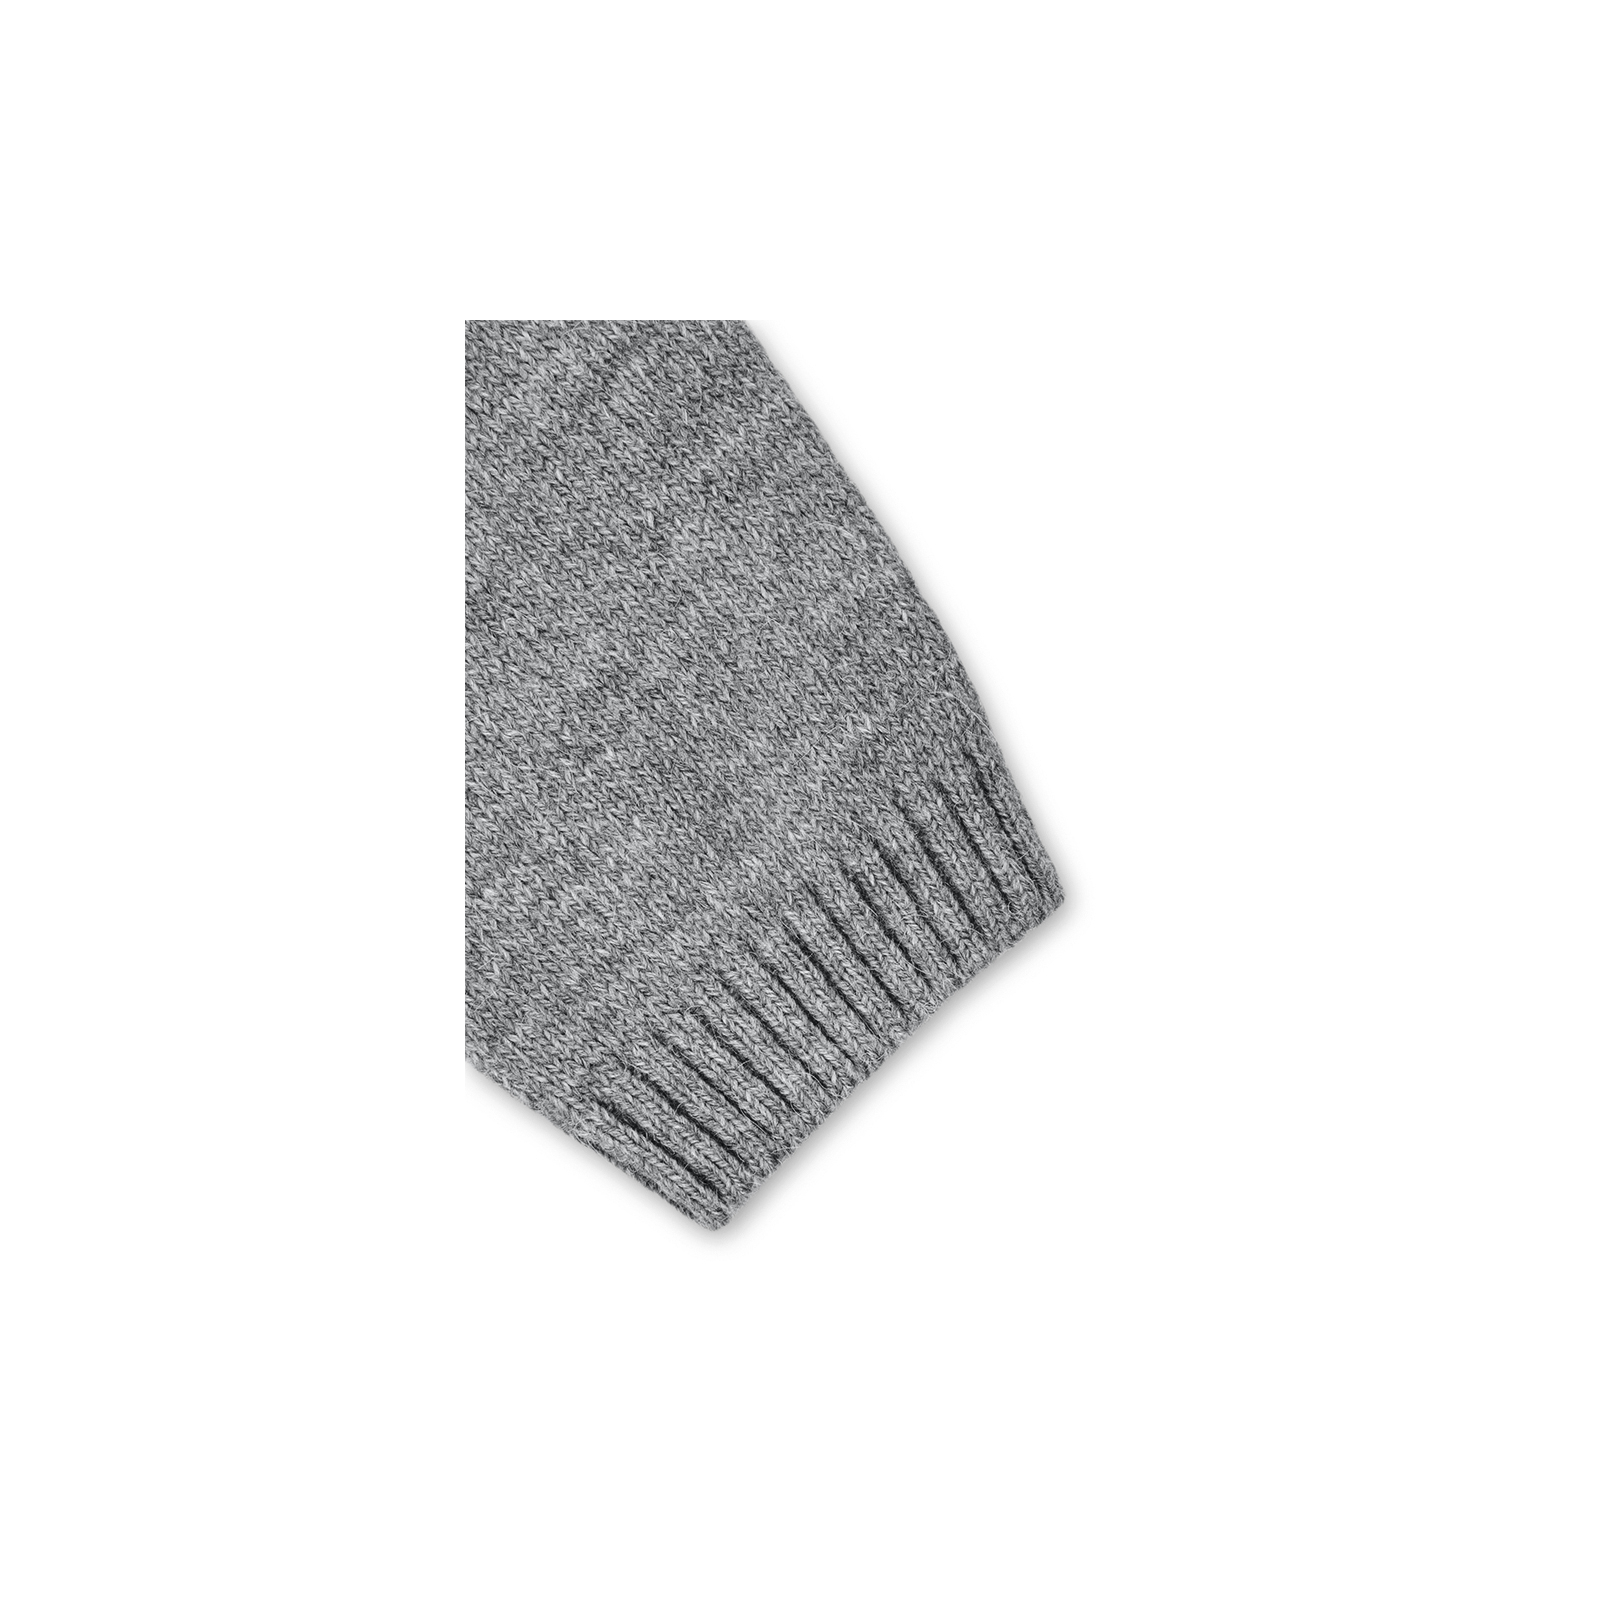 Кофта Breeze джемпер серый меланж со звездочками (T-104-110G-gray) изображение 5